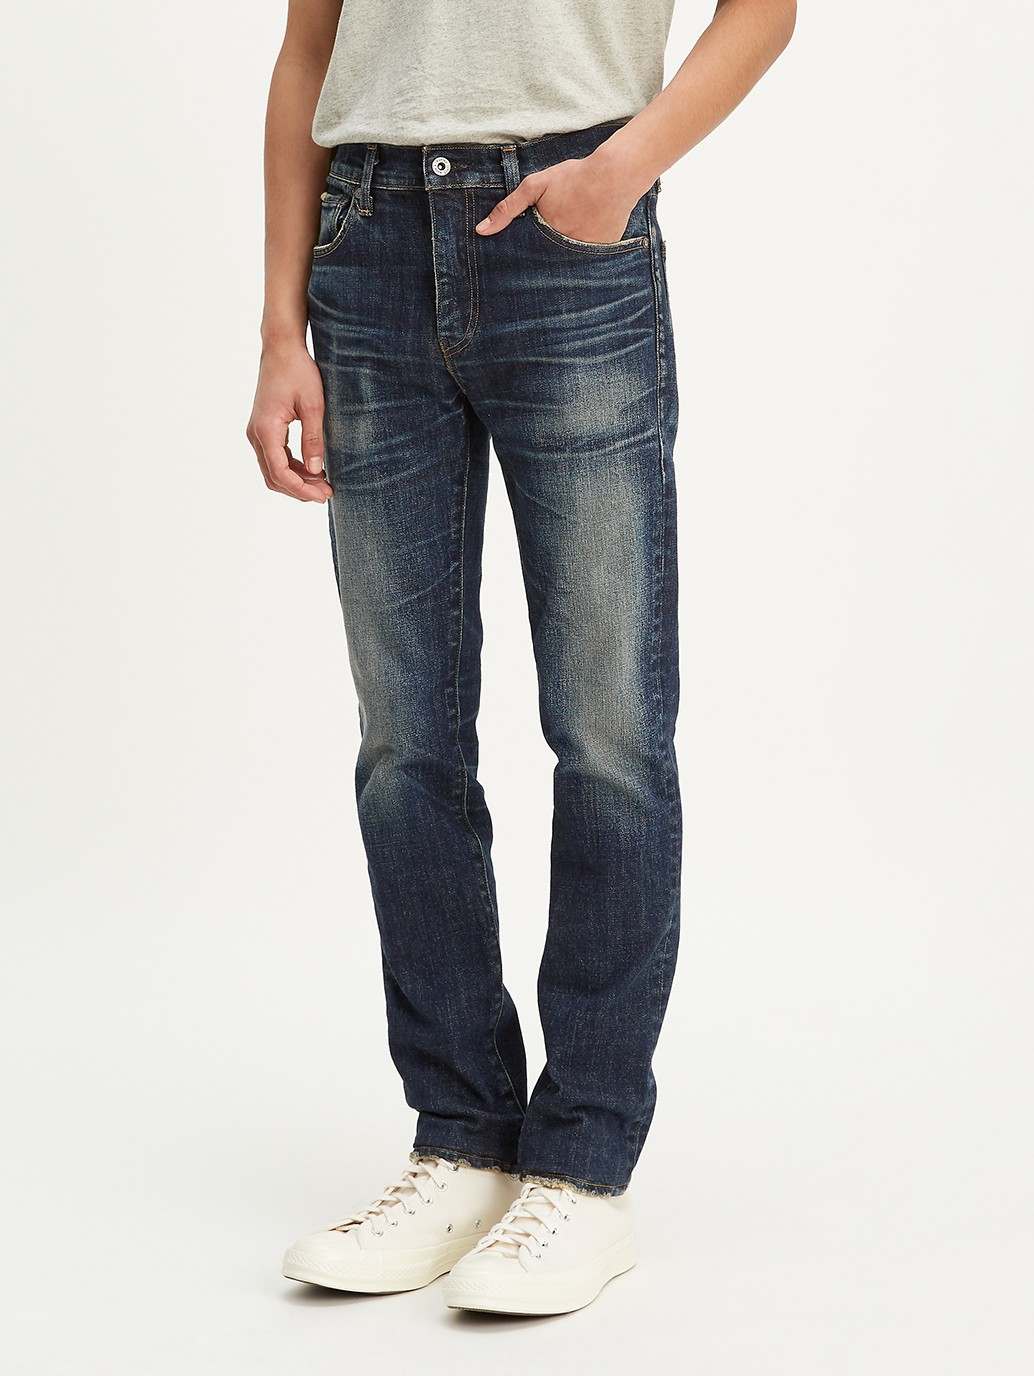 buy levis 511 jeans